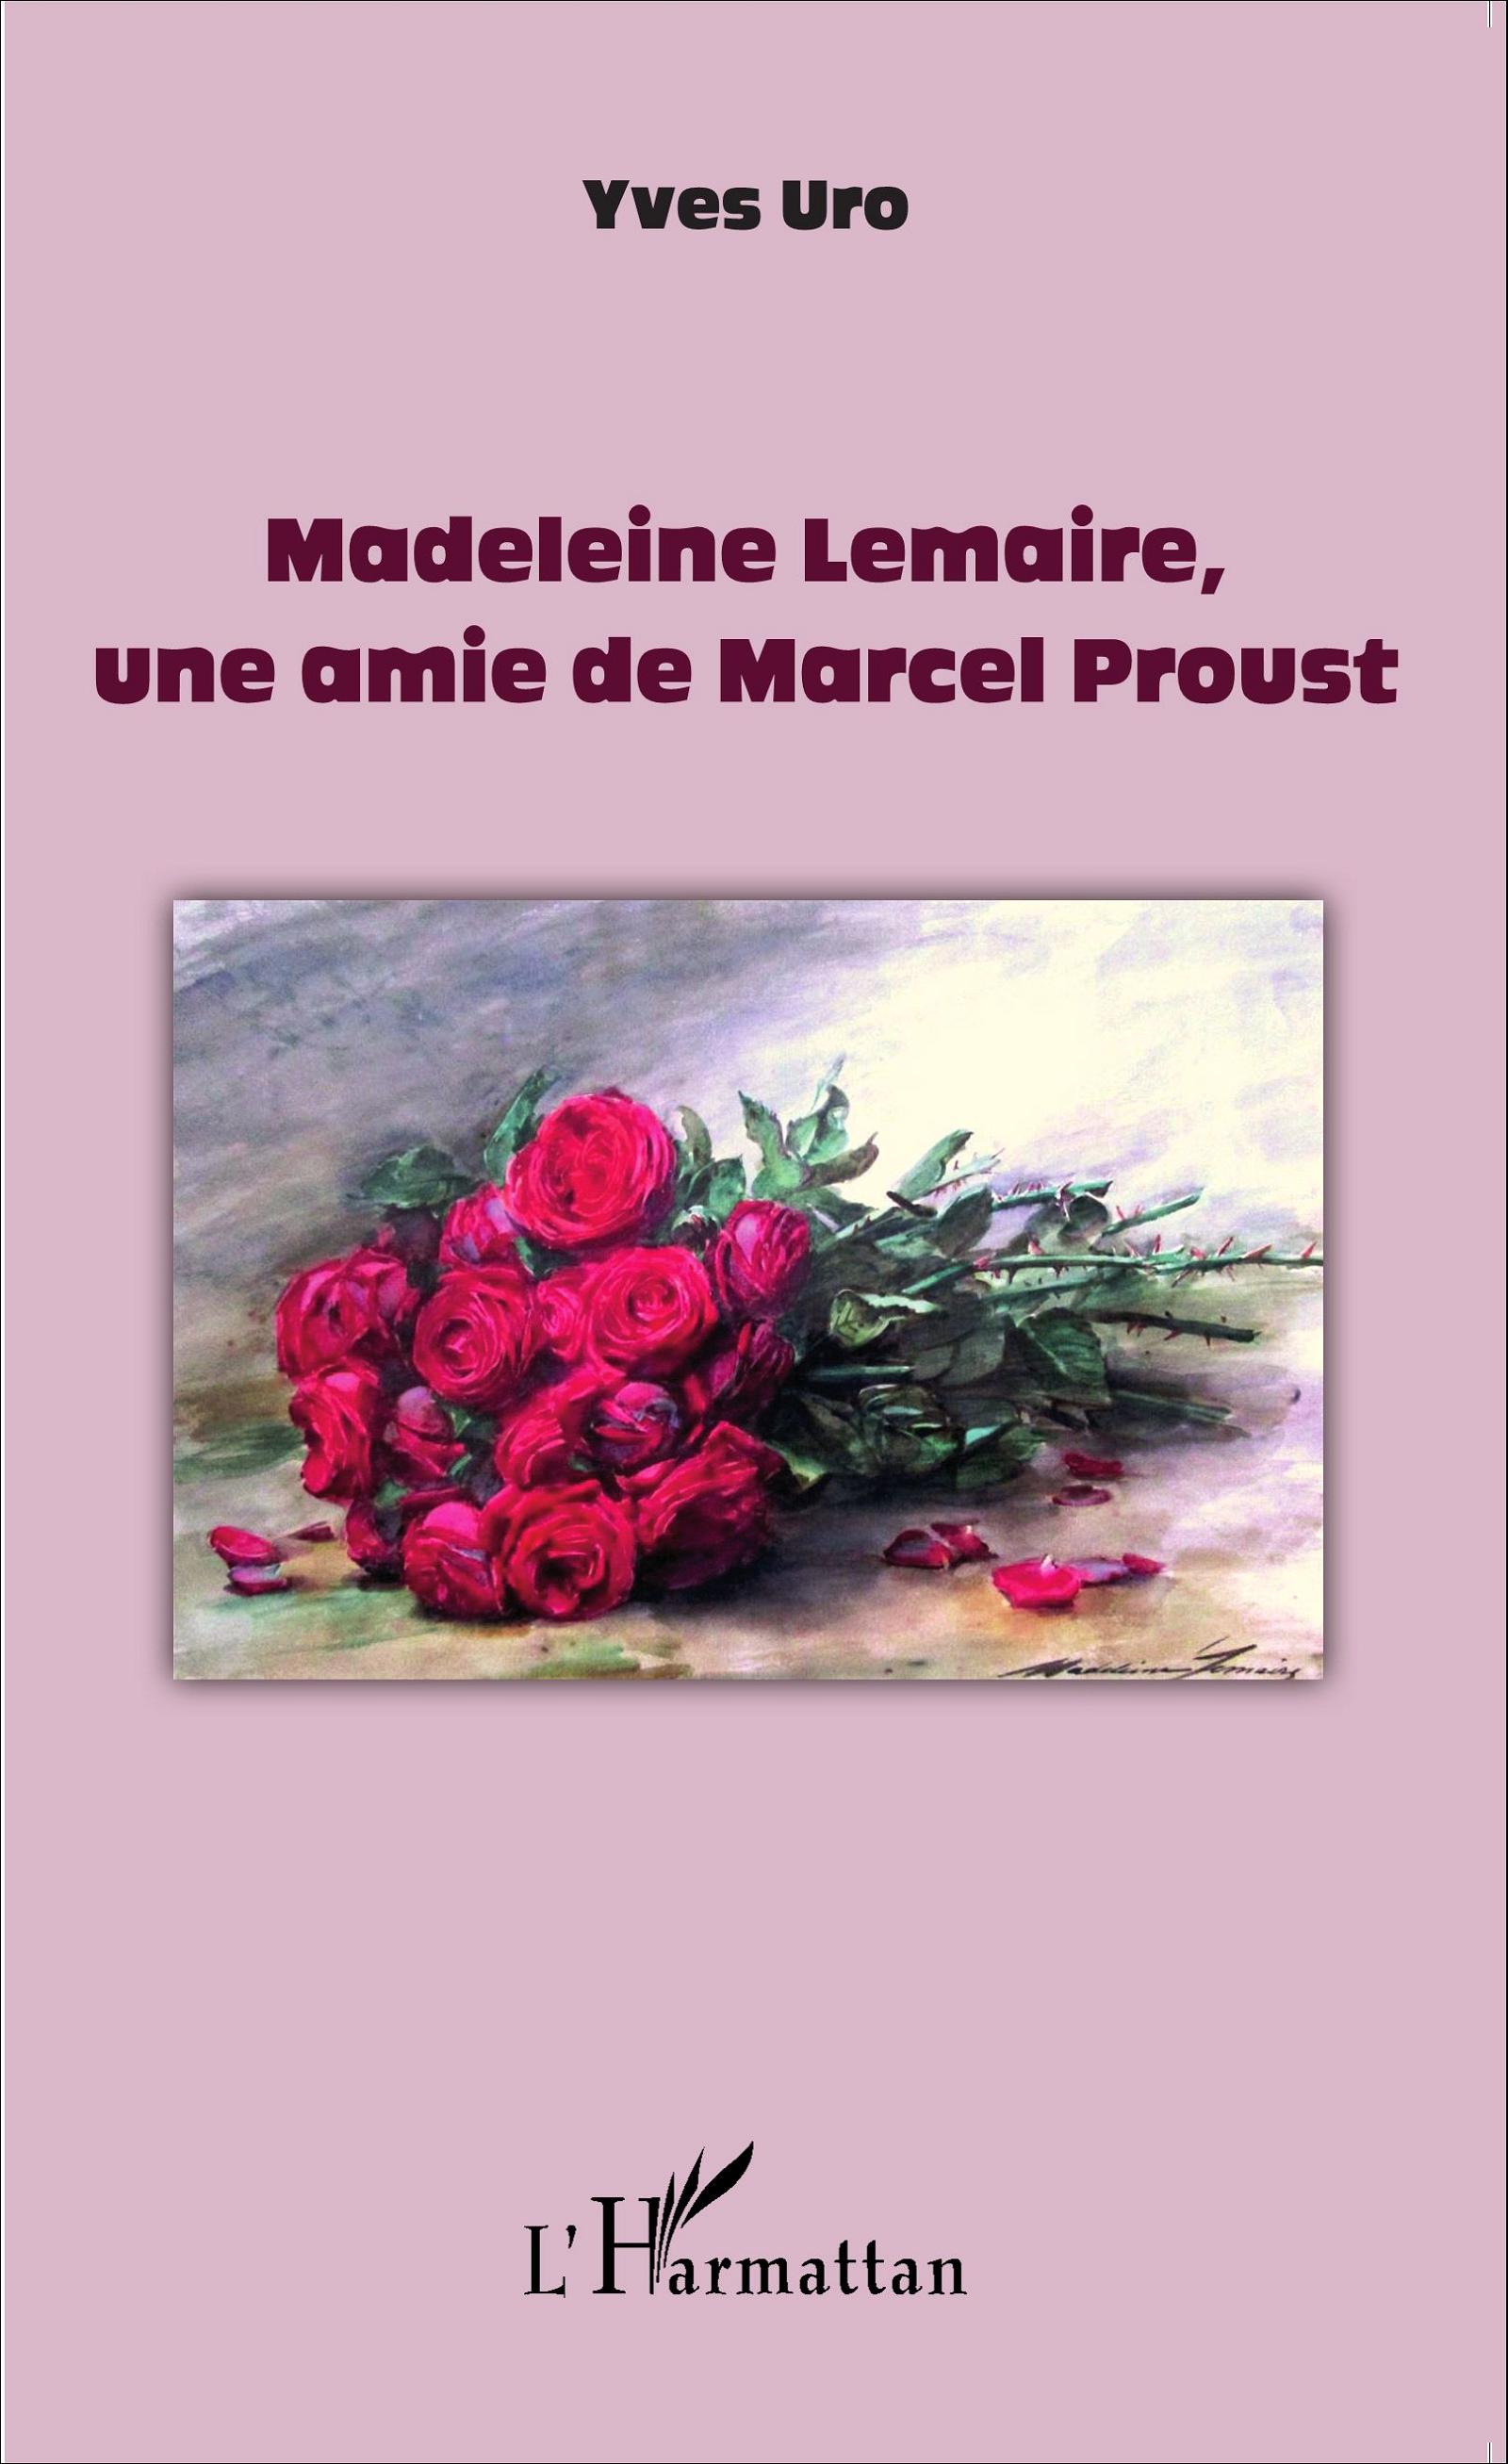 Y. Uro, Madeleine Lemaire, une amie de Marcel Proust